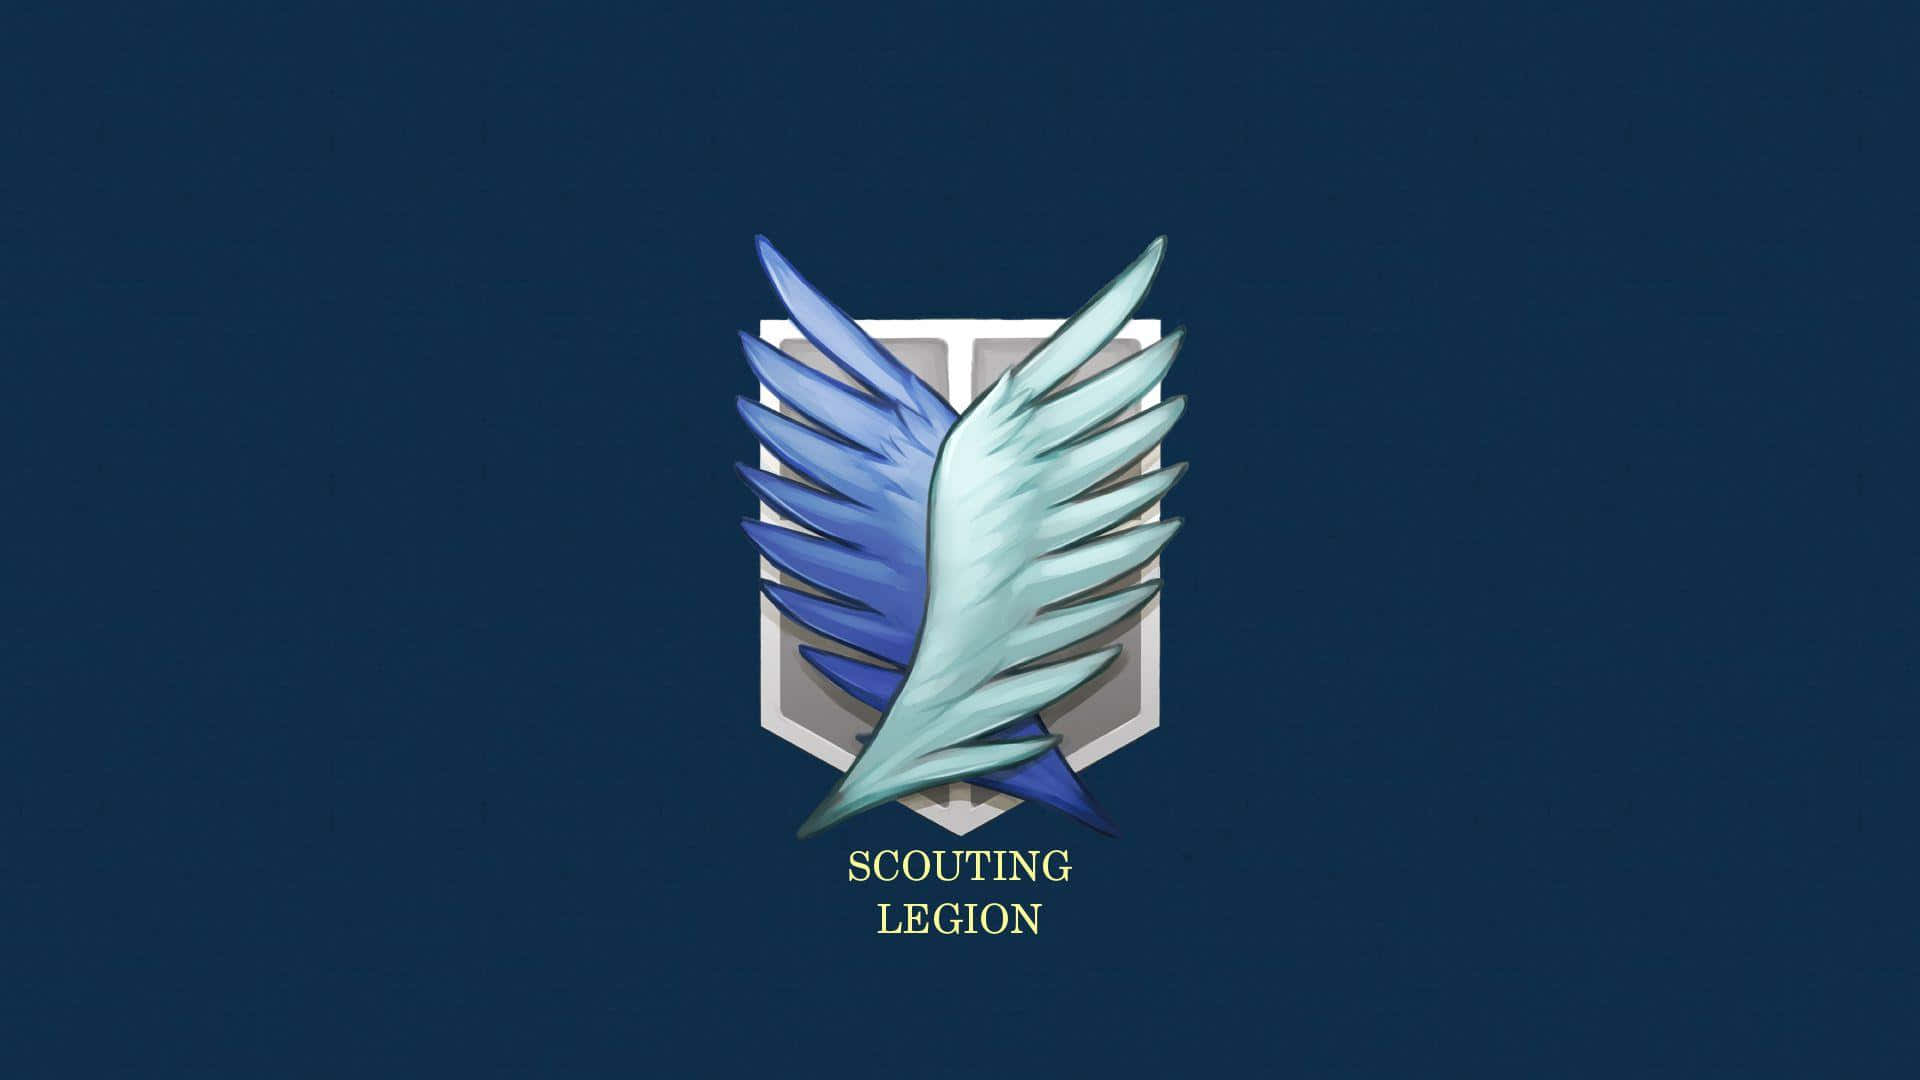 Scouting Legion Emblem Shingekino Kyojin Background